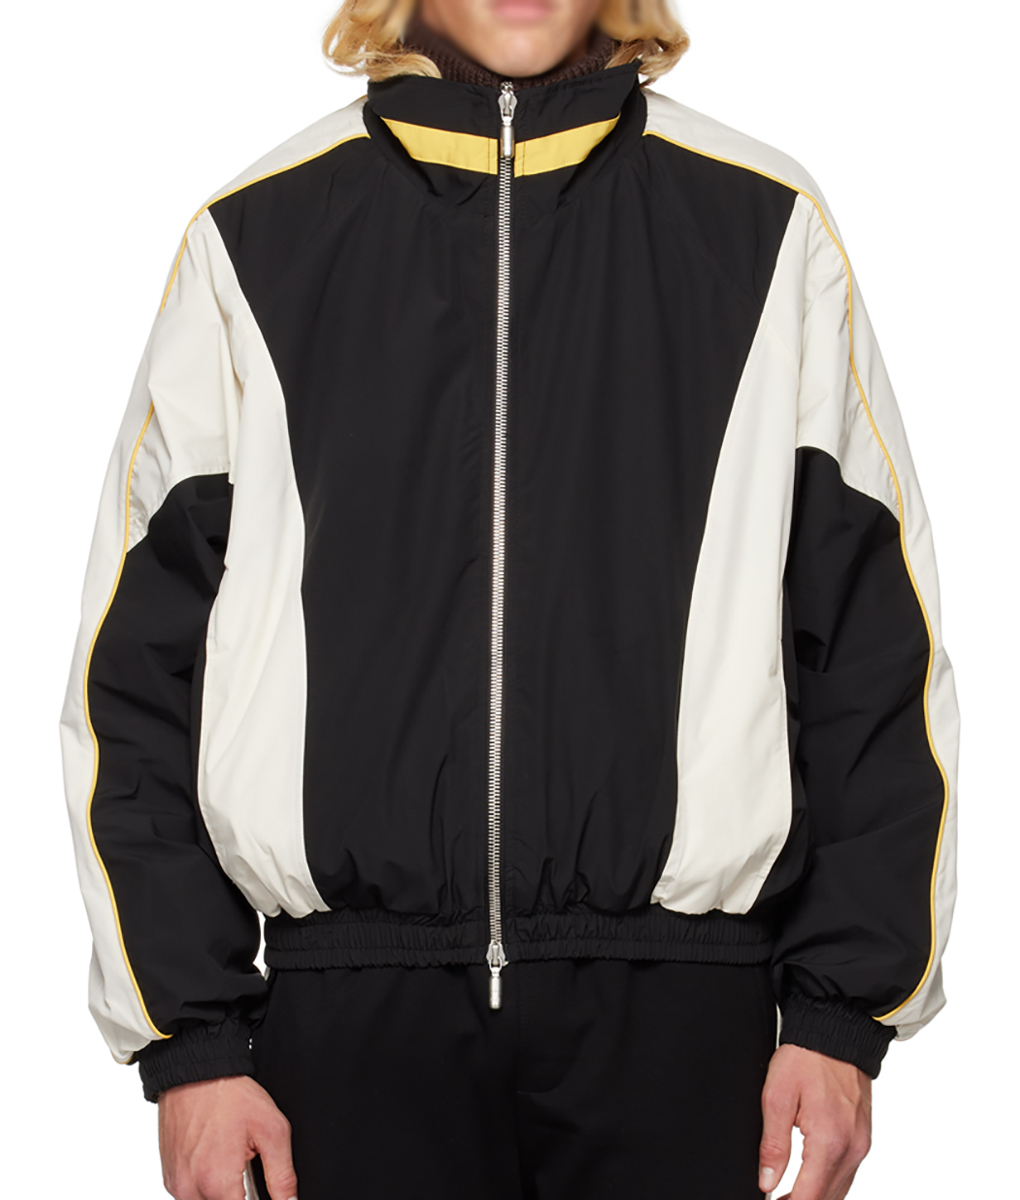 Bupkis-Pete-Davidson-Black-and-White-Oversized-Jacket-1